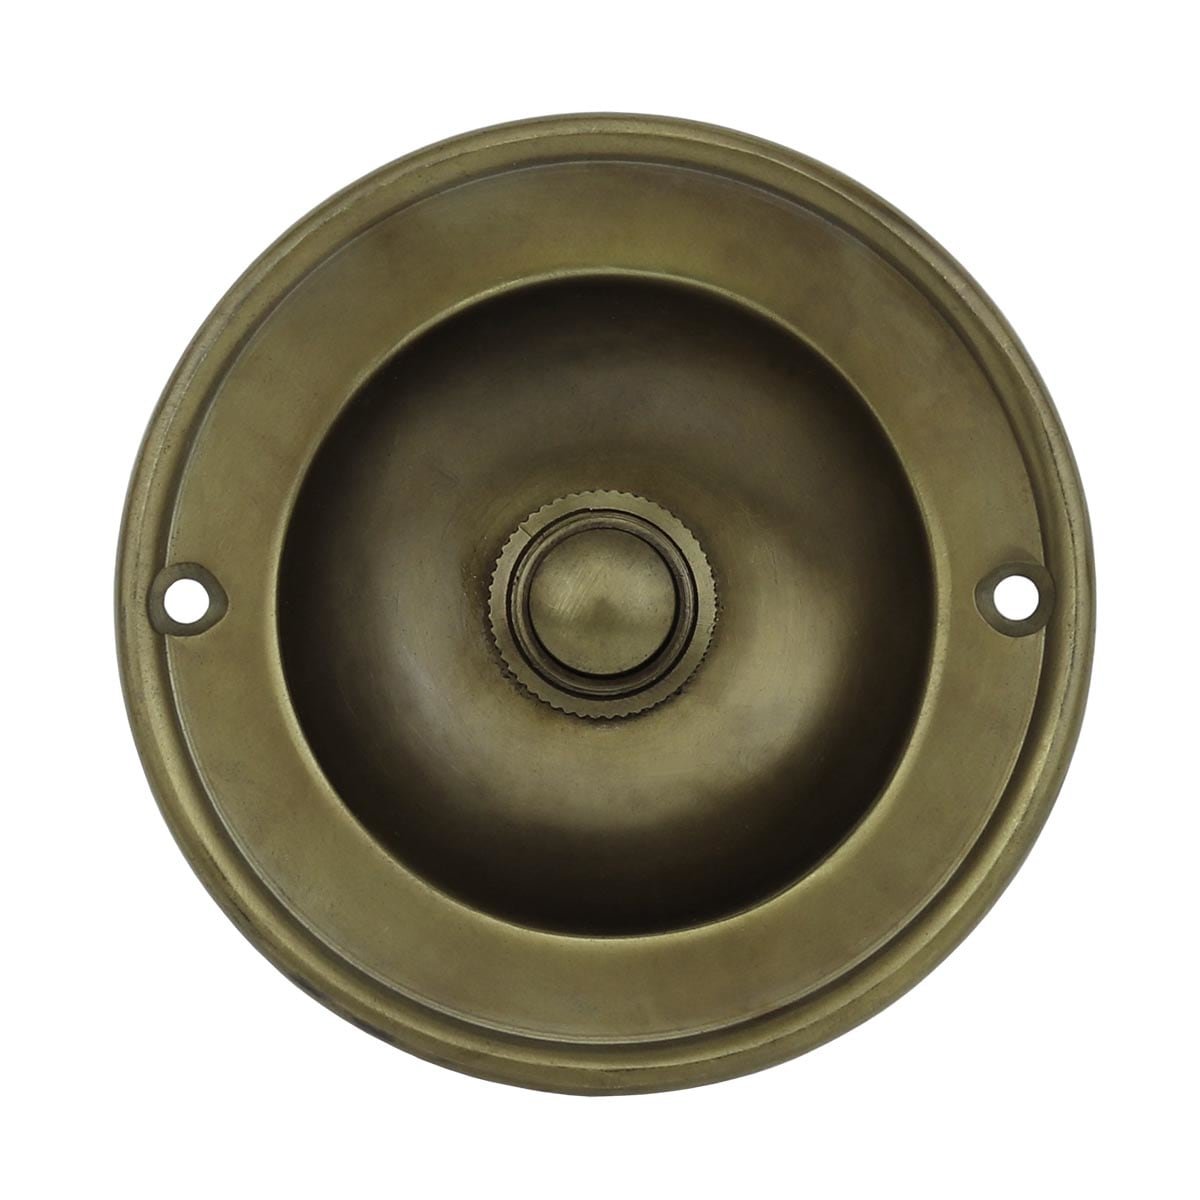 Doorbell bowl shaped bronze Husum - Ø 80 mm